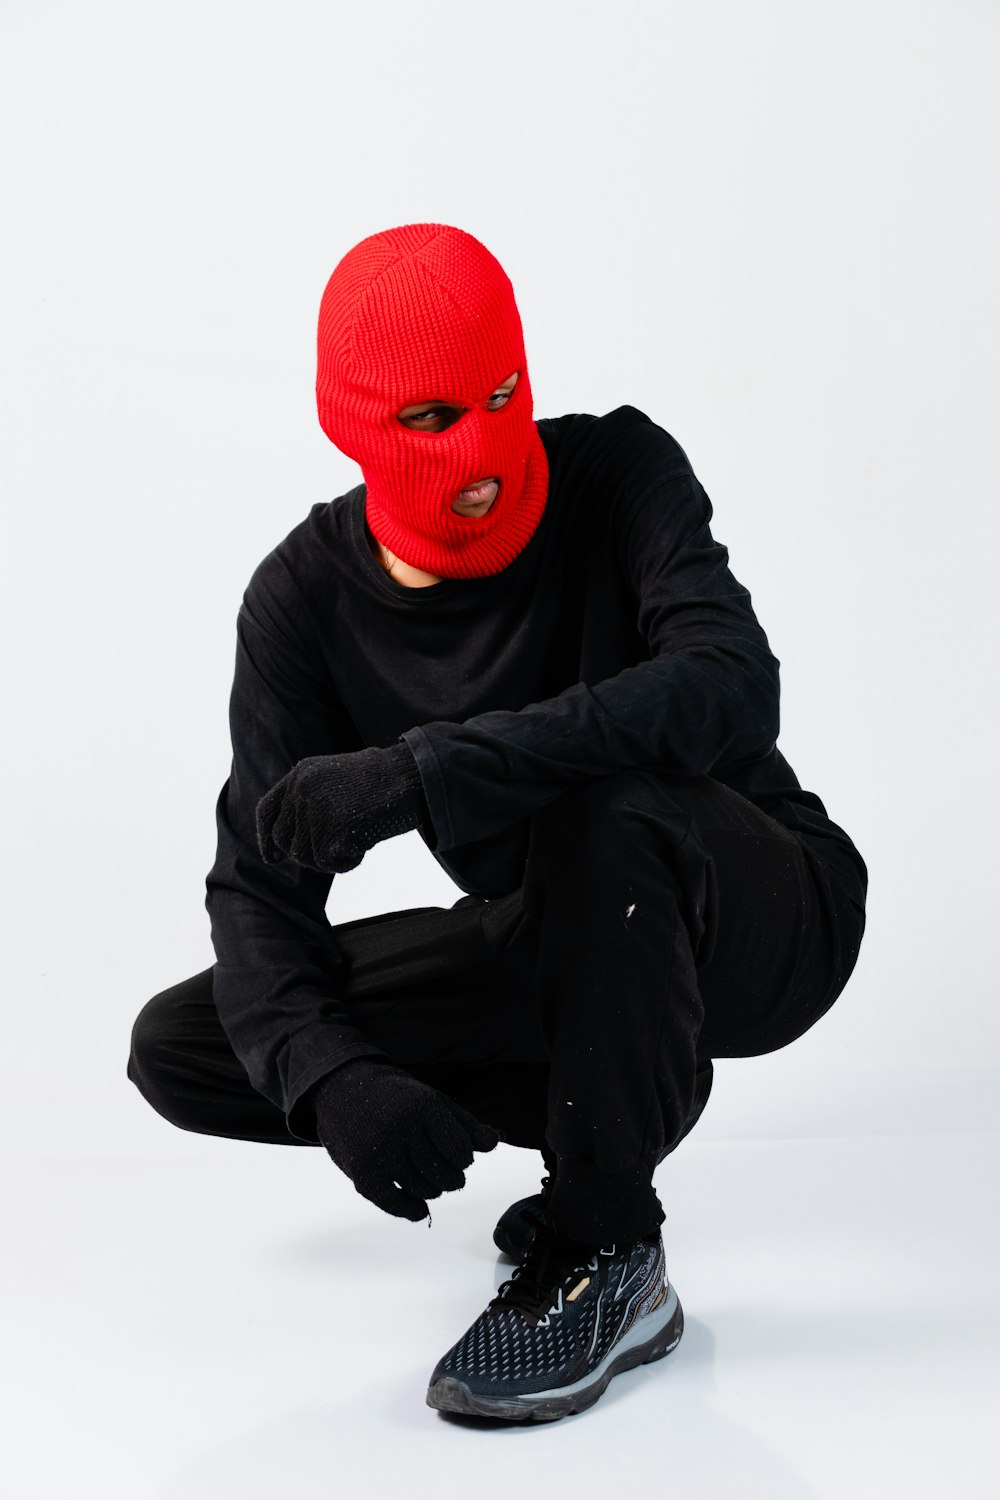 Ein Mann mit roter Maske, der auf weißem Hintergrund hockt